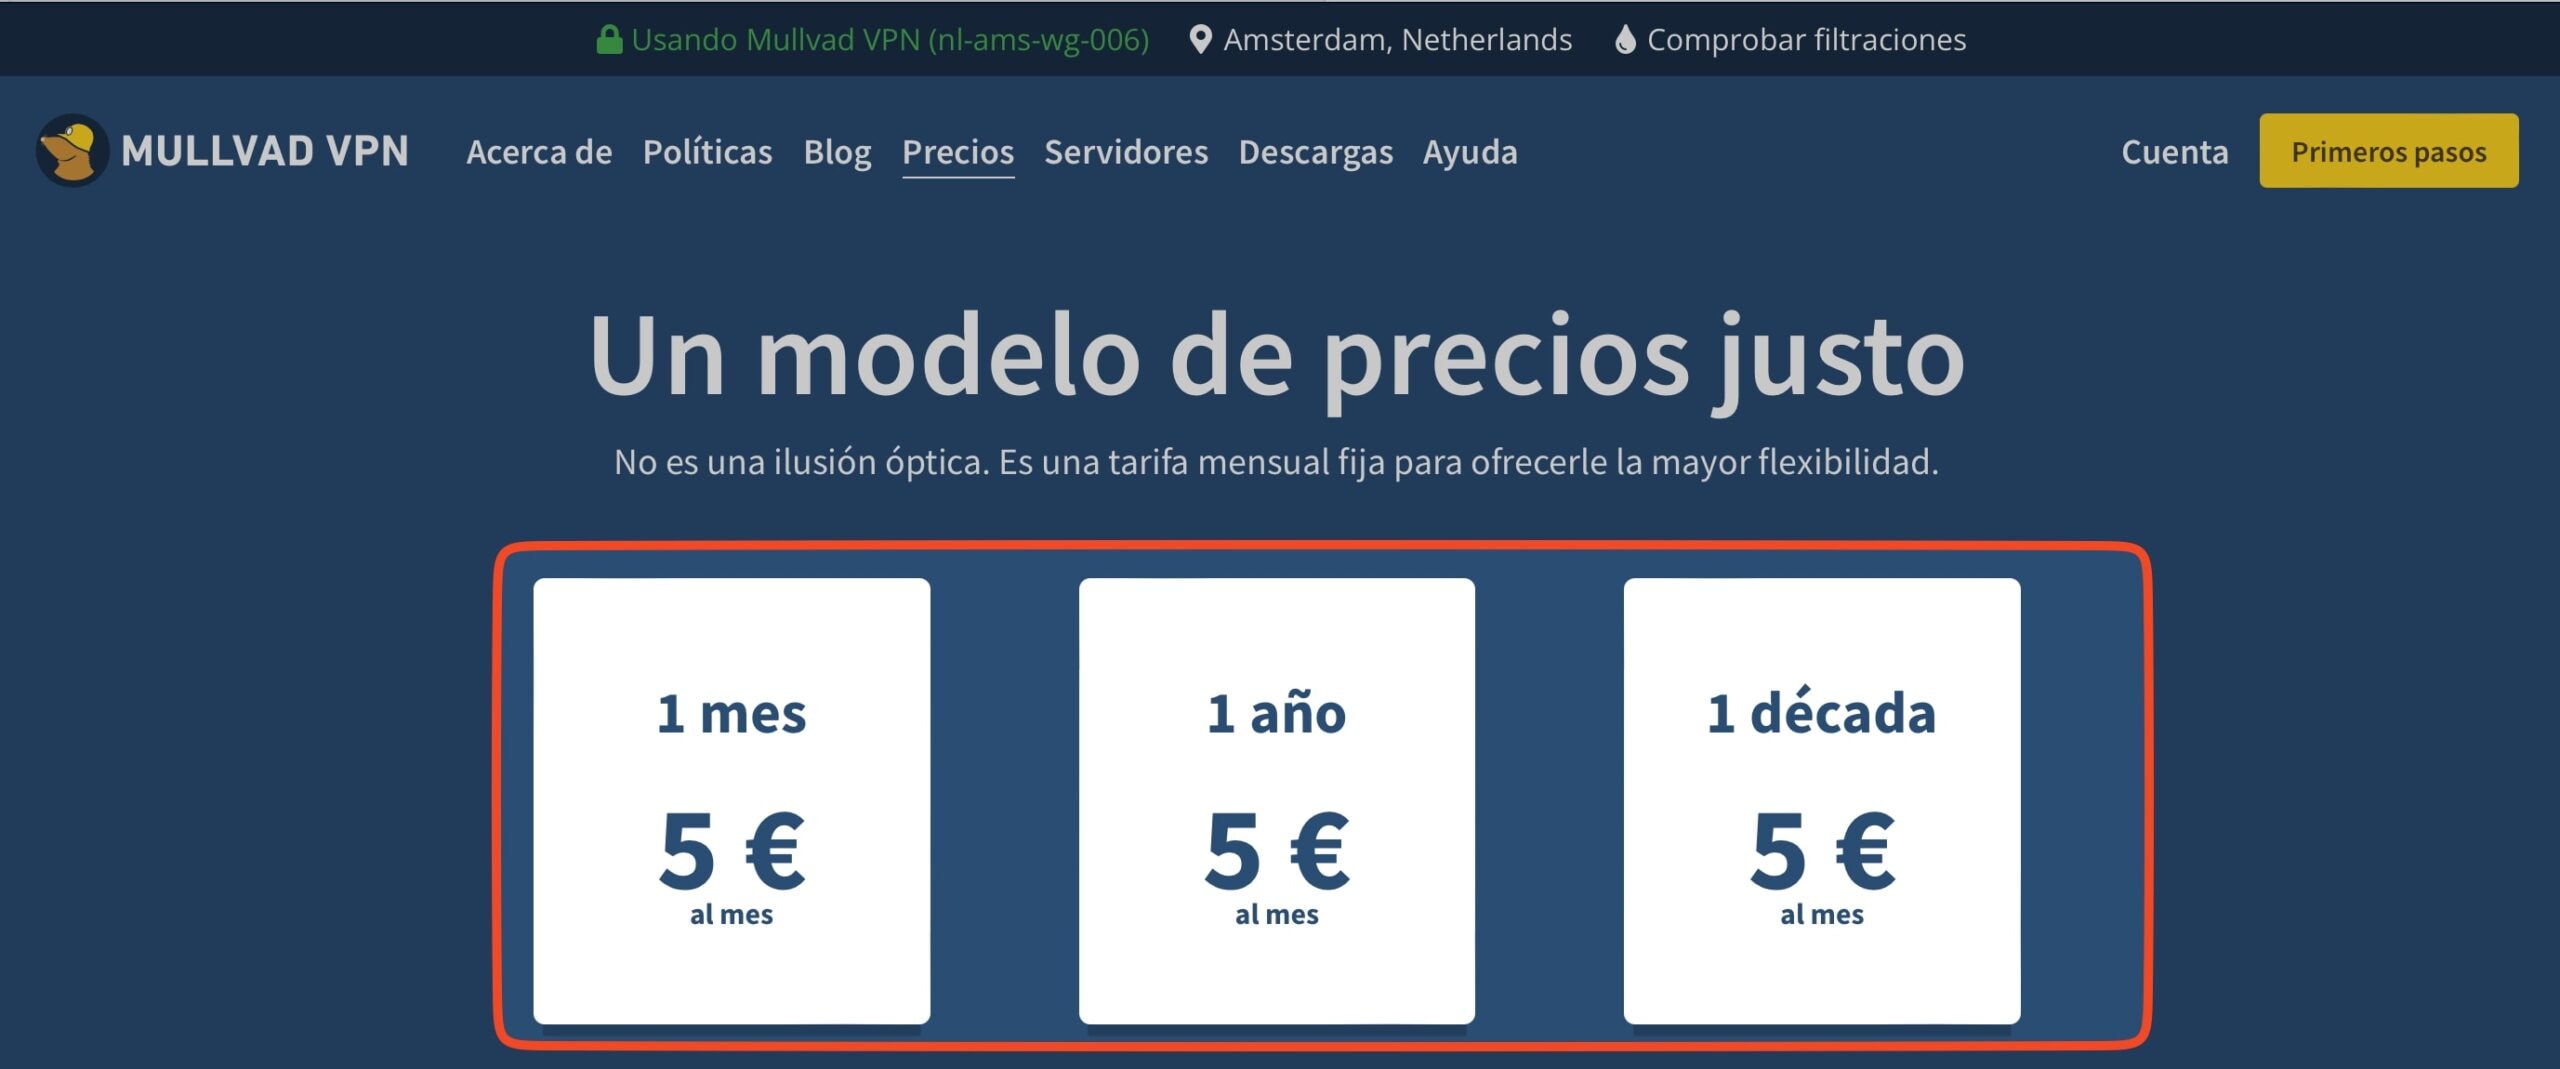 Precios de Mullvad VPN: siempre 5 euros. Todos los meses del año. 